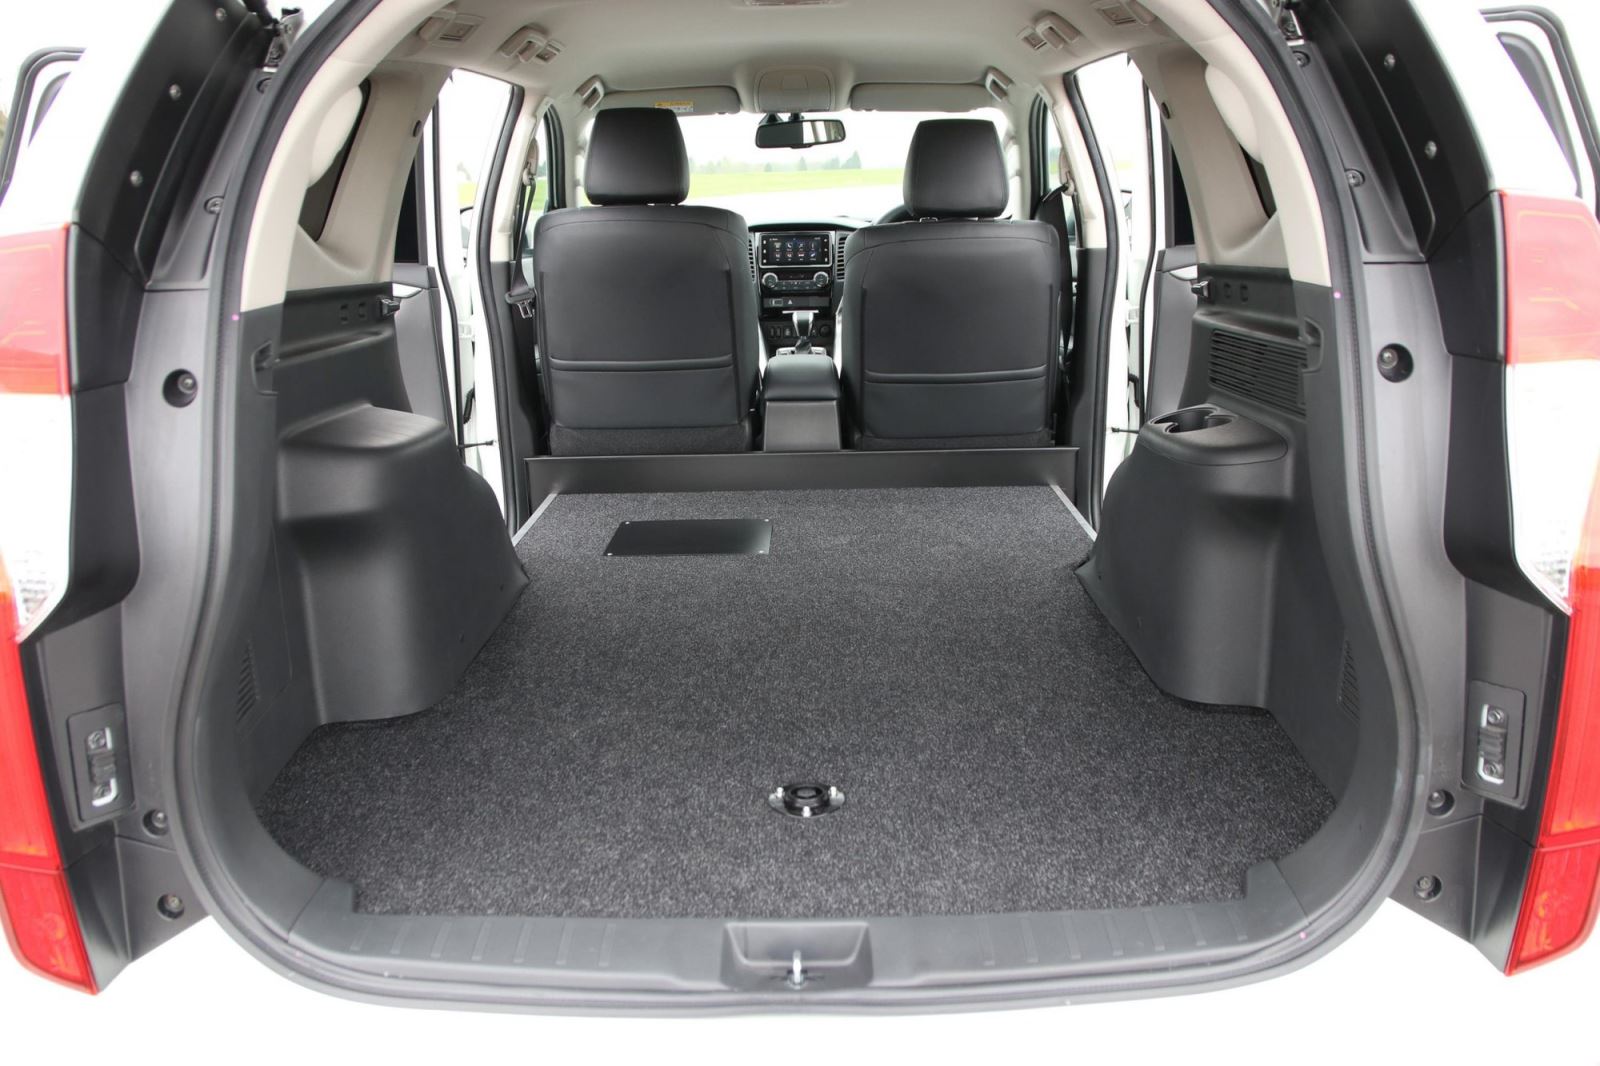 Mitsubishi Pajero Sport SUV "bán tải" cho khách chạy dịch vụ 3